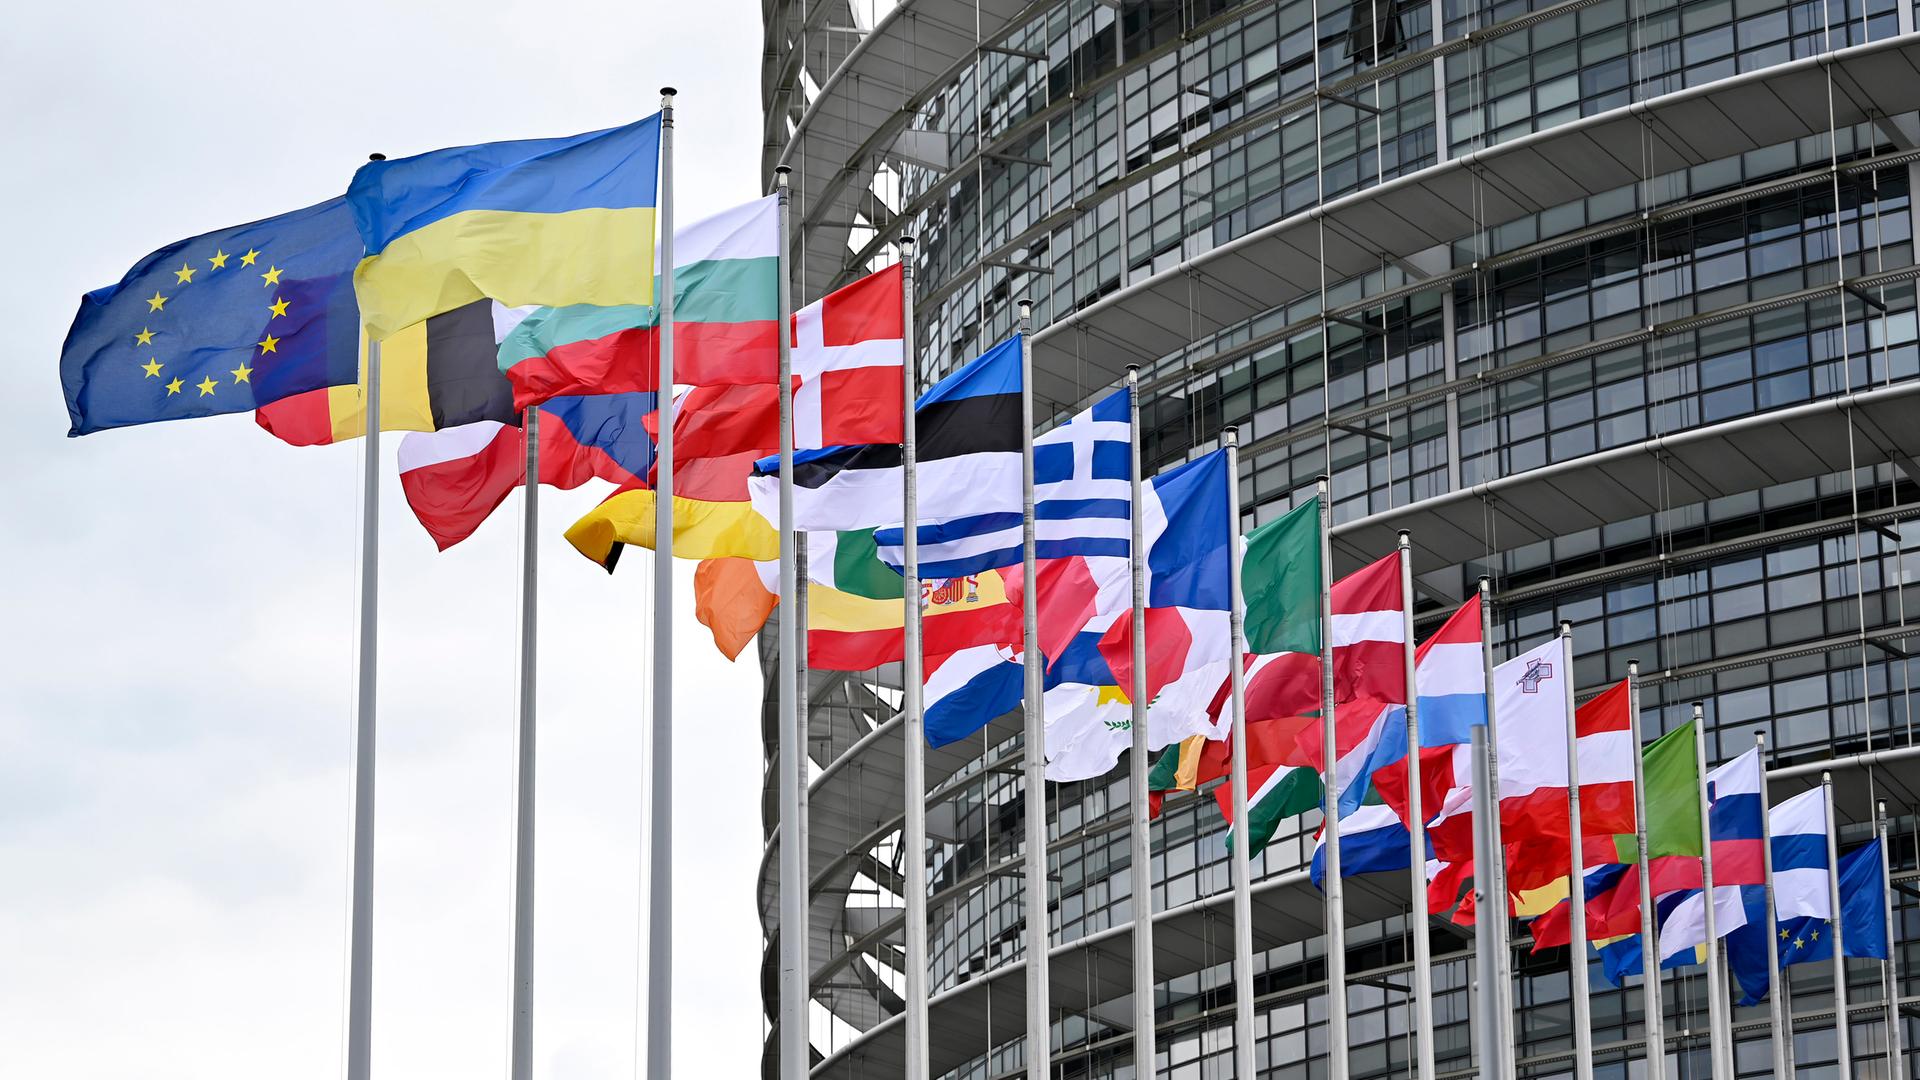 Flaggen der EU-Staaten und der Ukraine sowie die EU-Flagge wehen vor dem EU-Parlament in Straßburg.